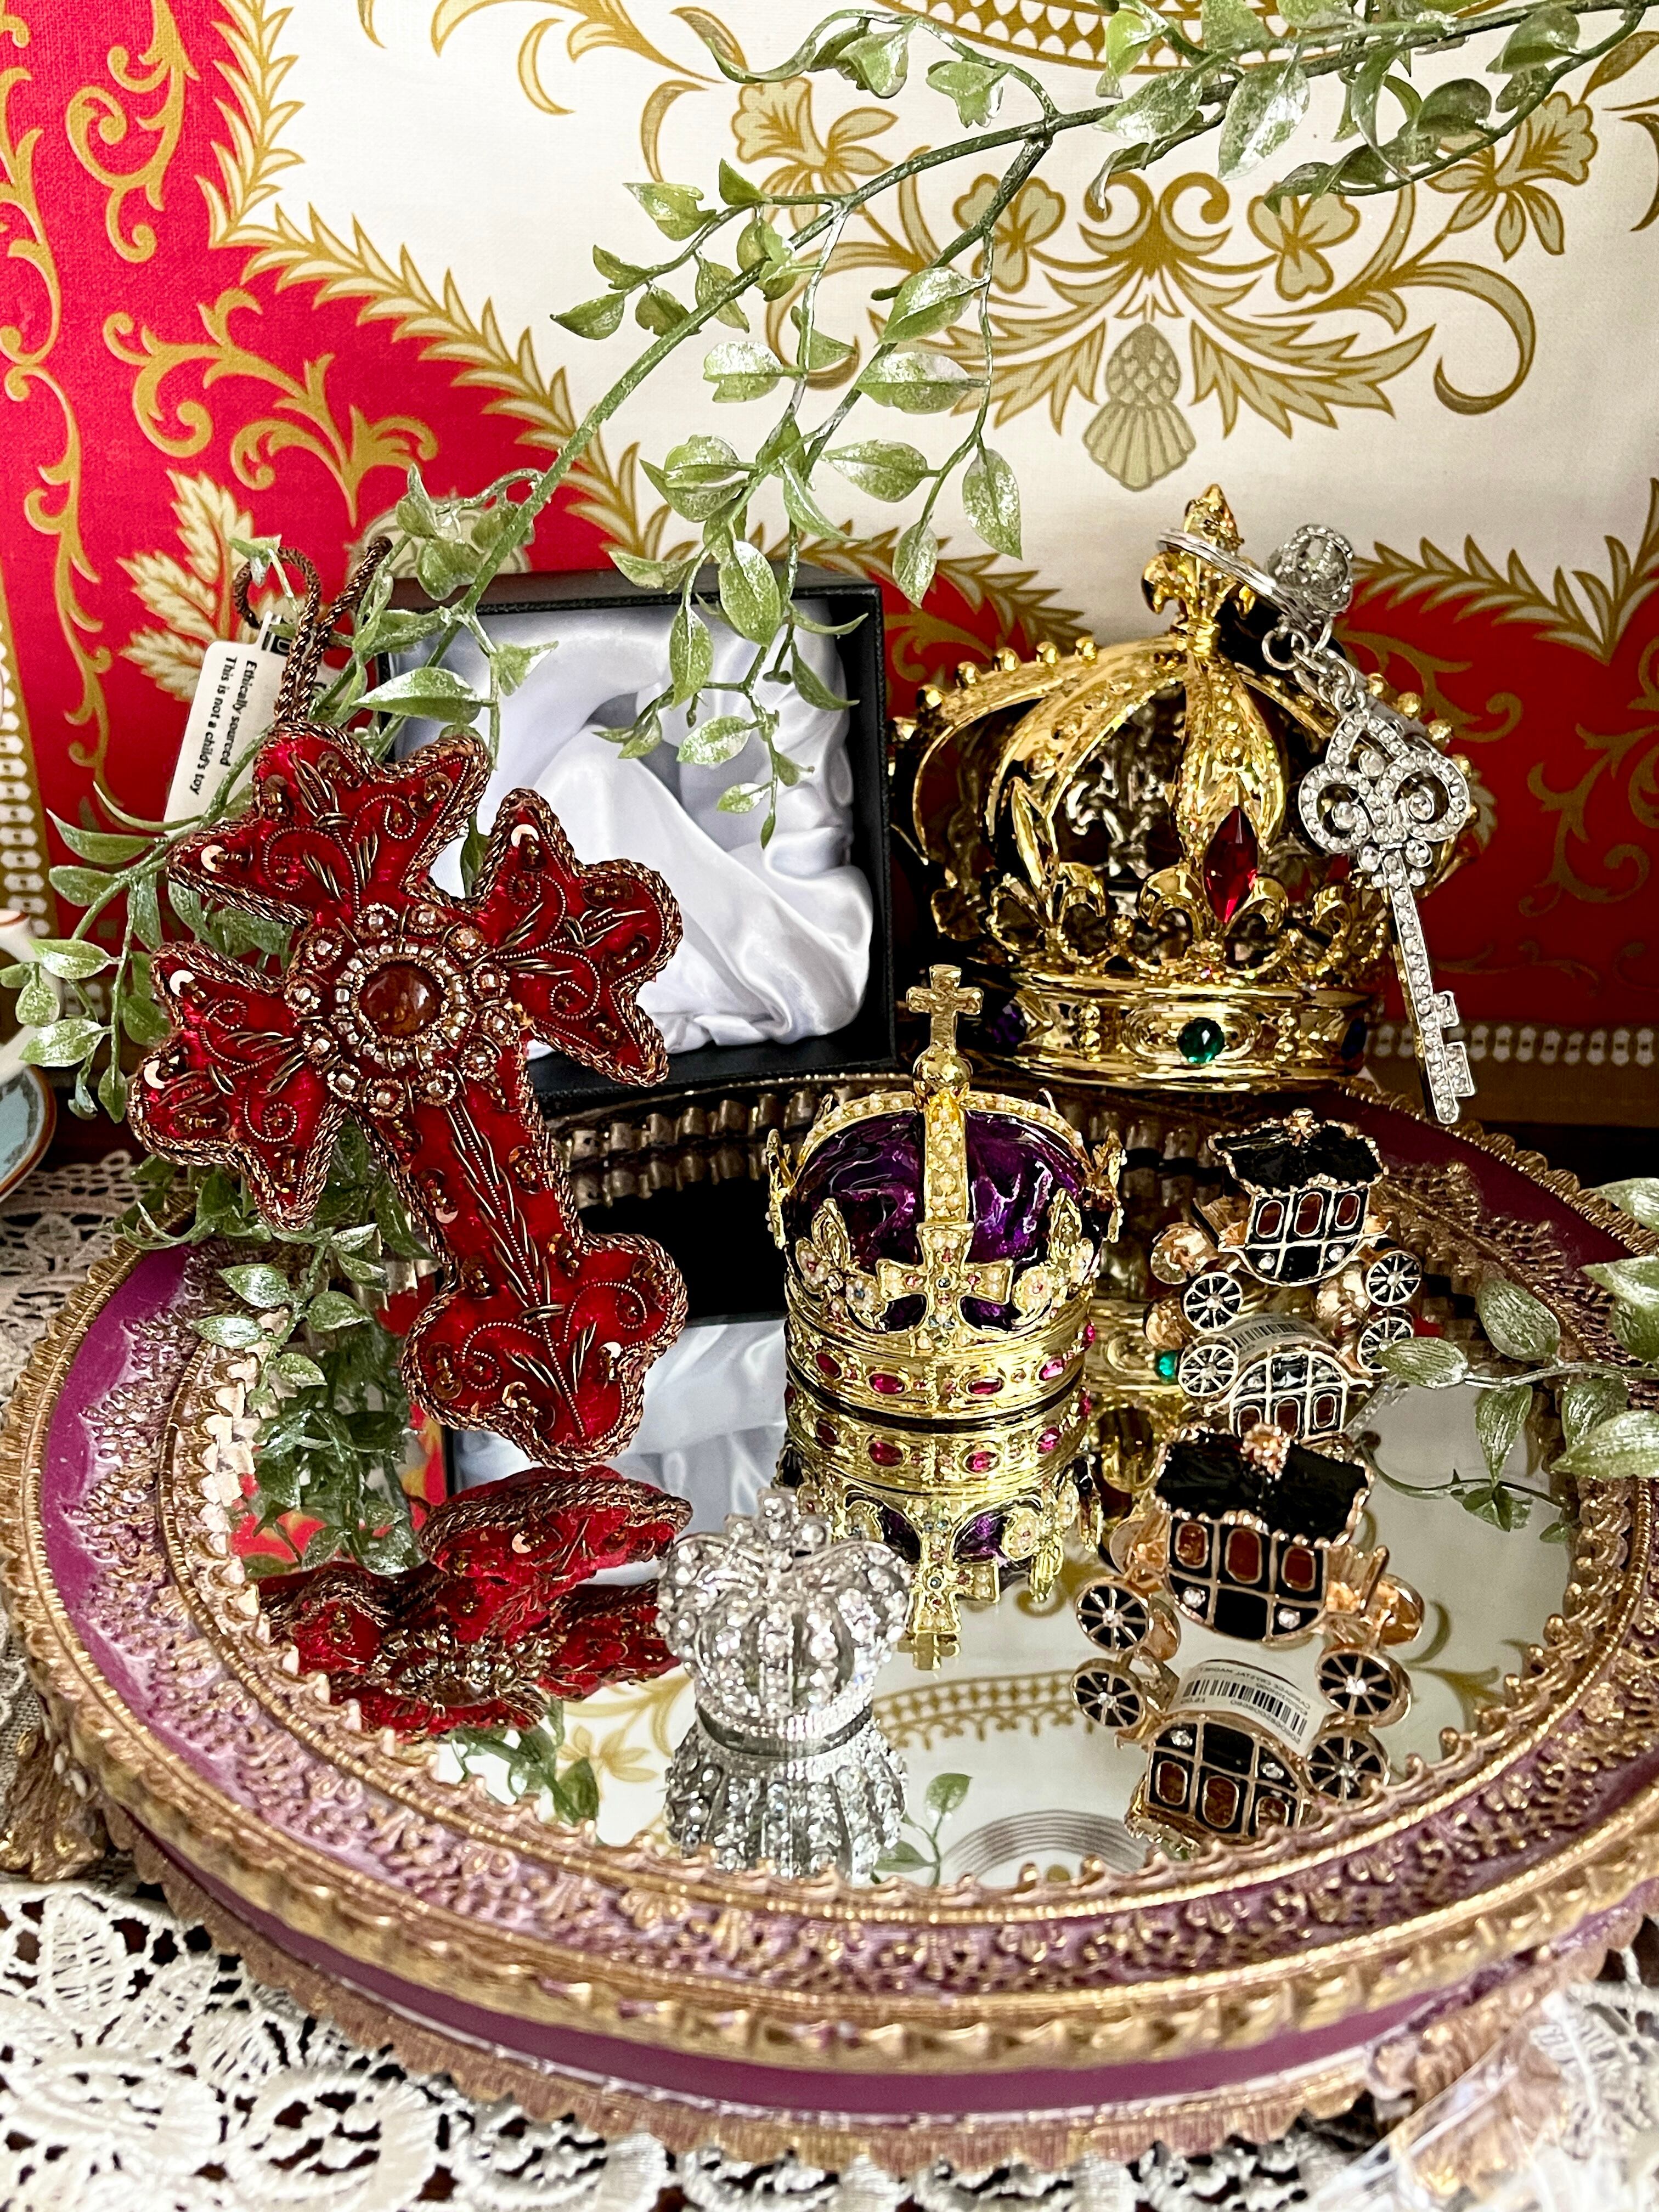 『Royal Palace』王冠 クリスタル マグネット Crown crystal magnet